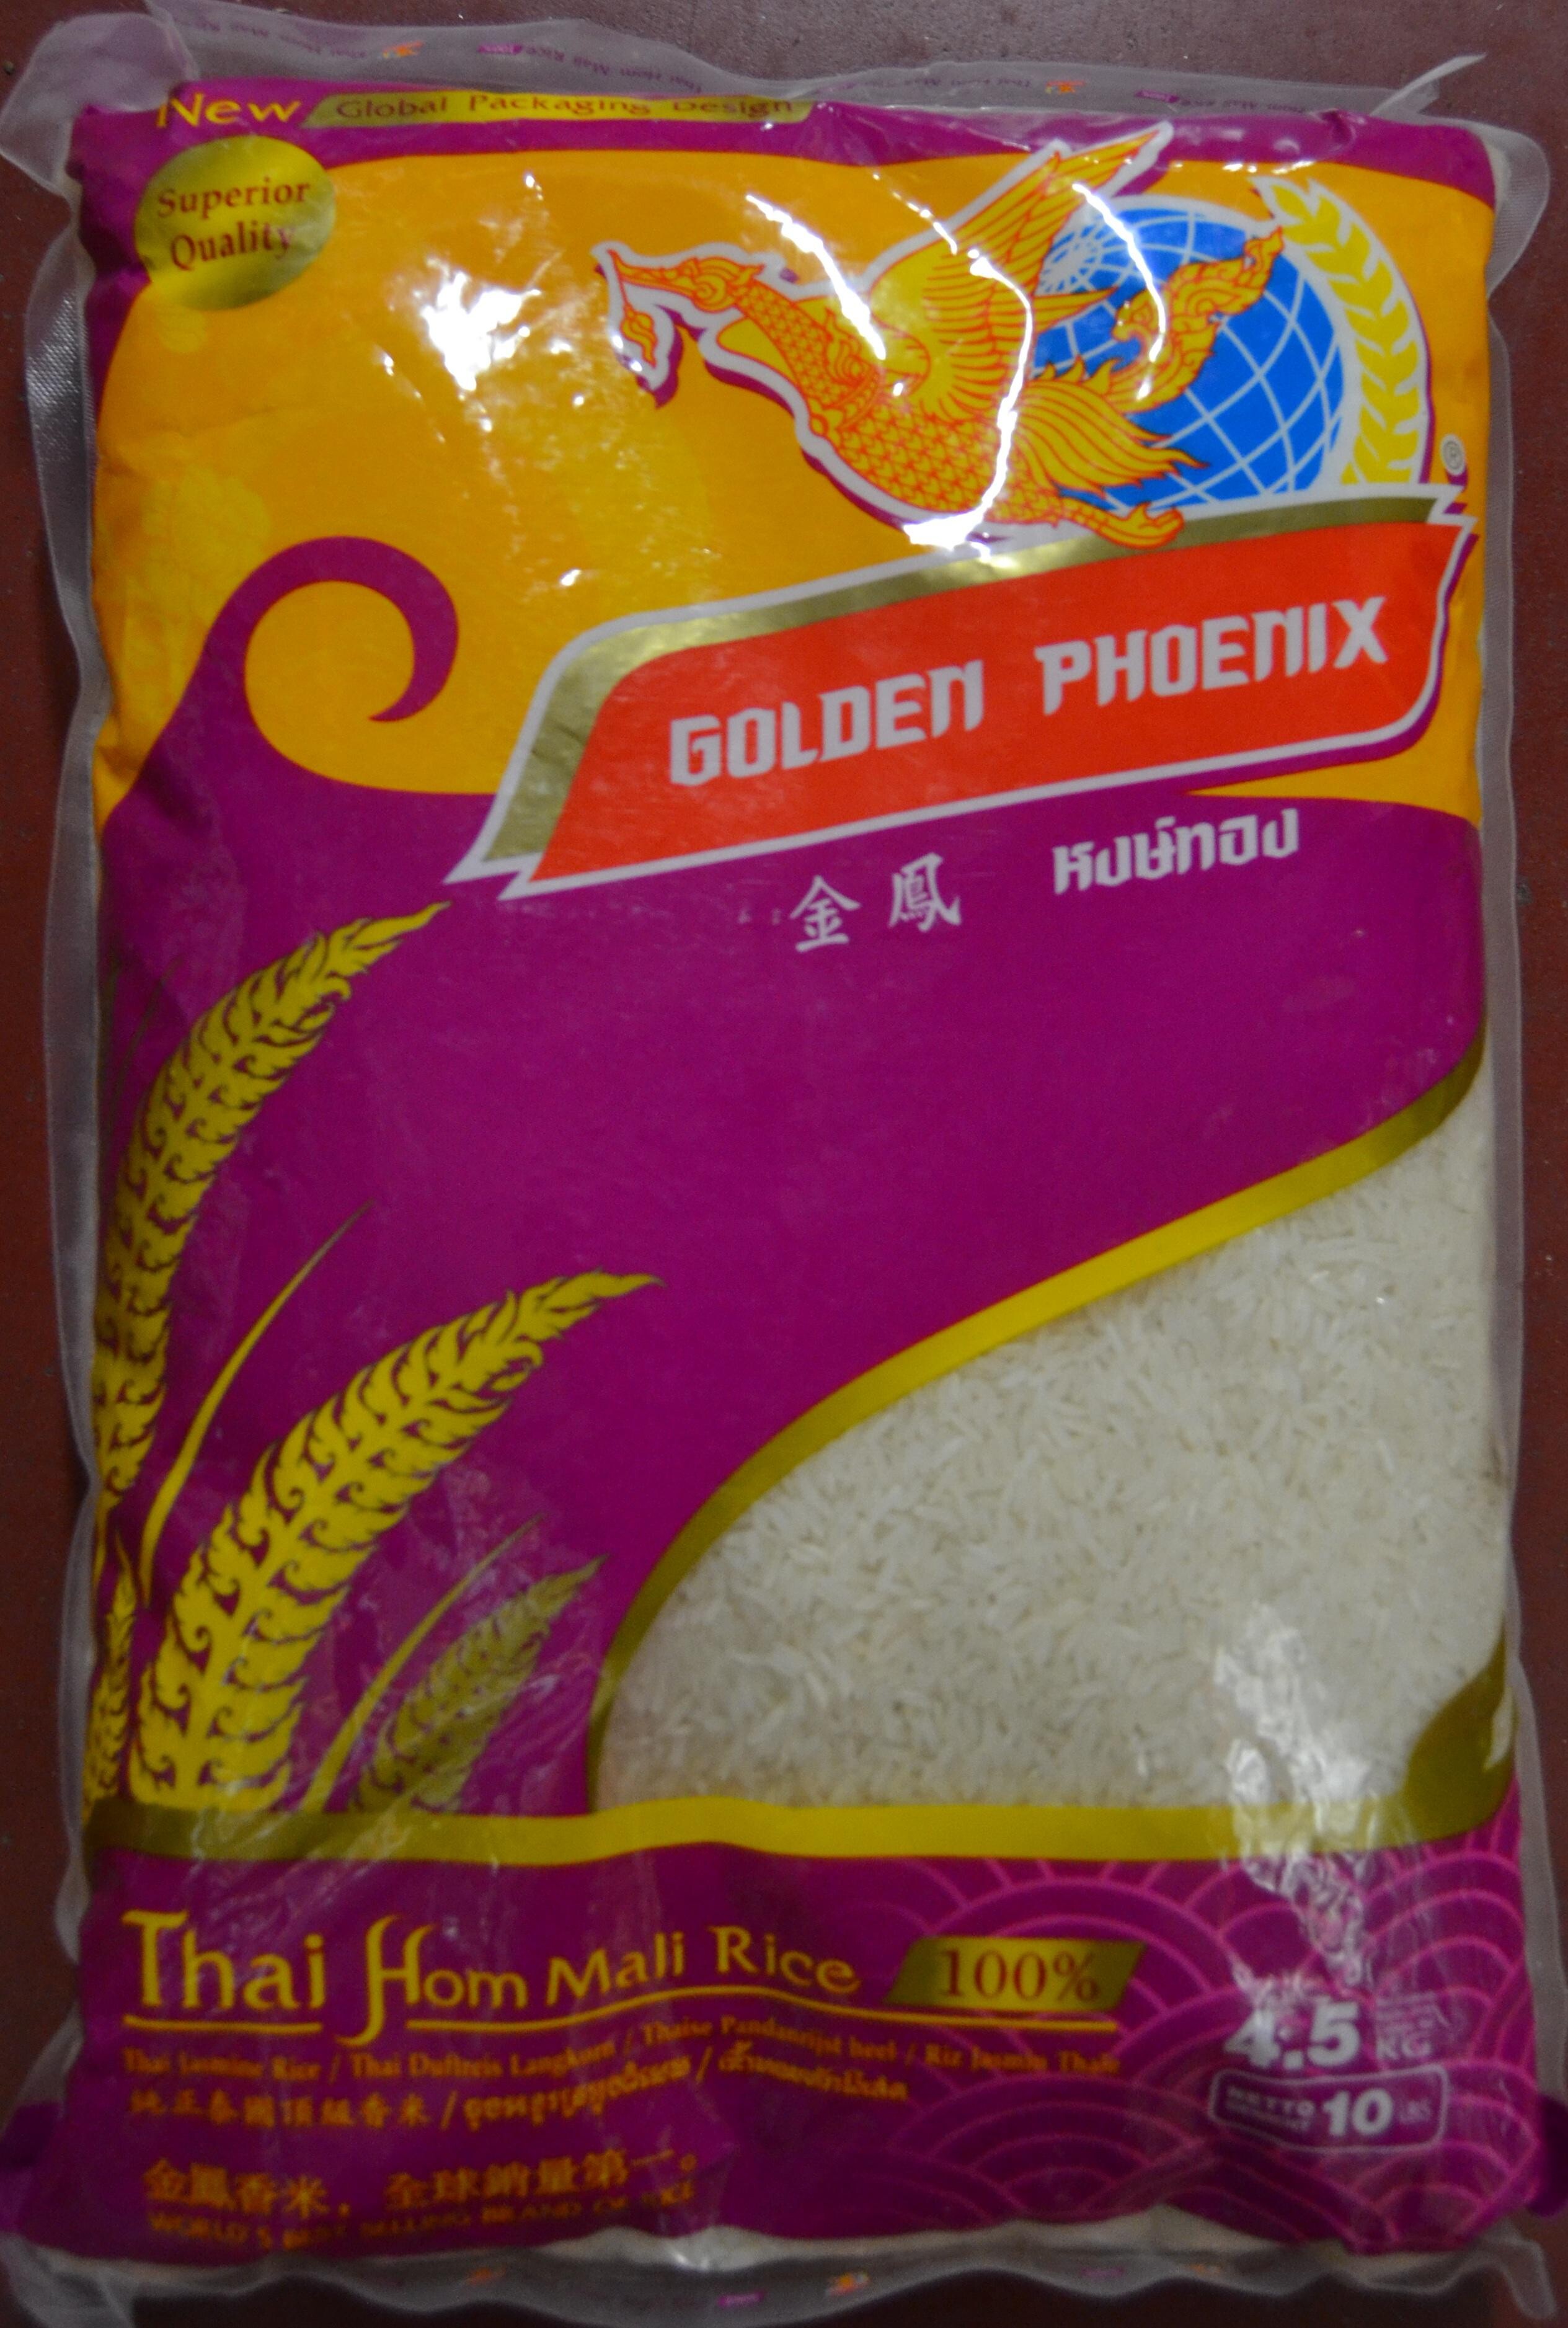 Thai Jasmine Rice 4,5kg AAA Golden Phoenix